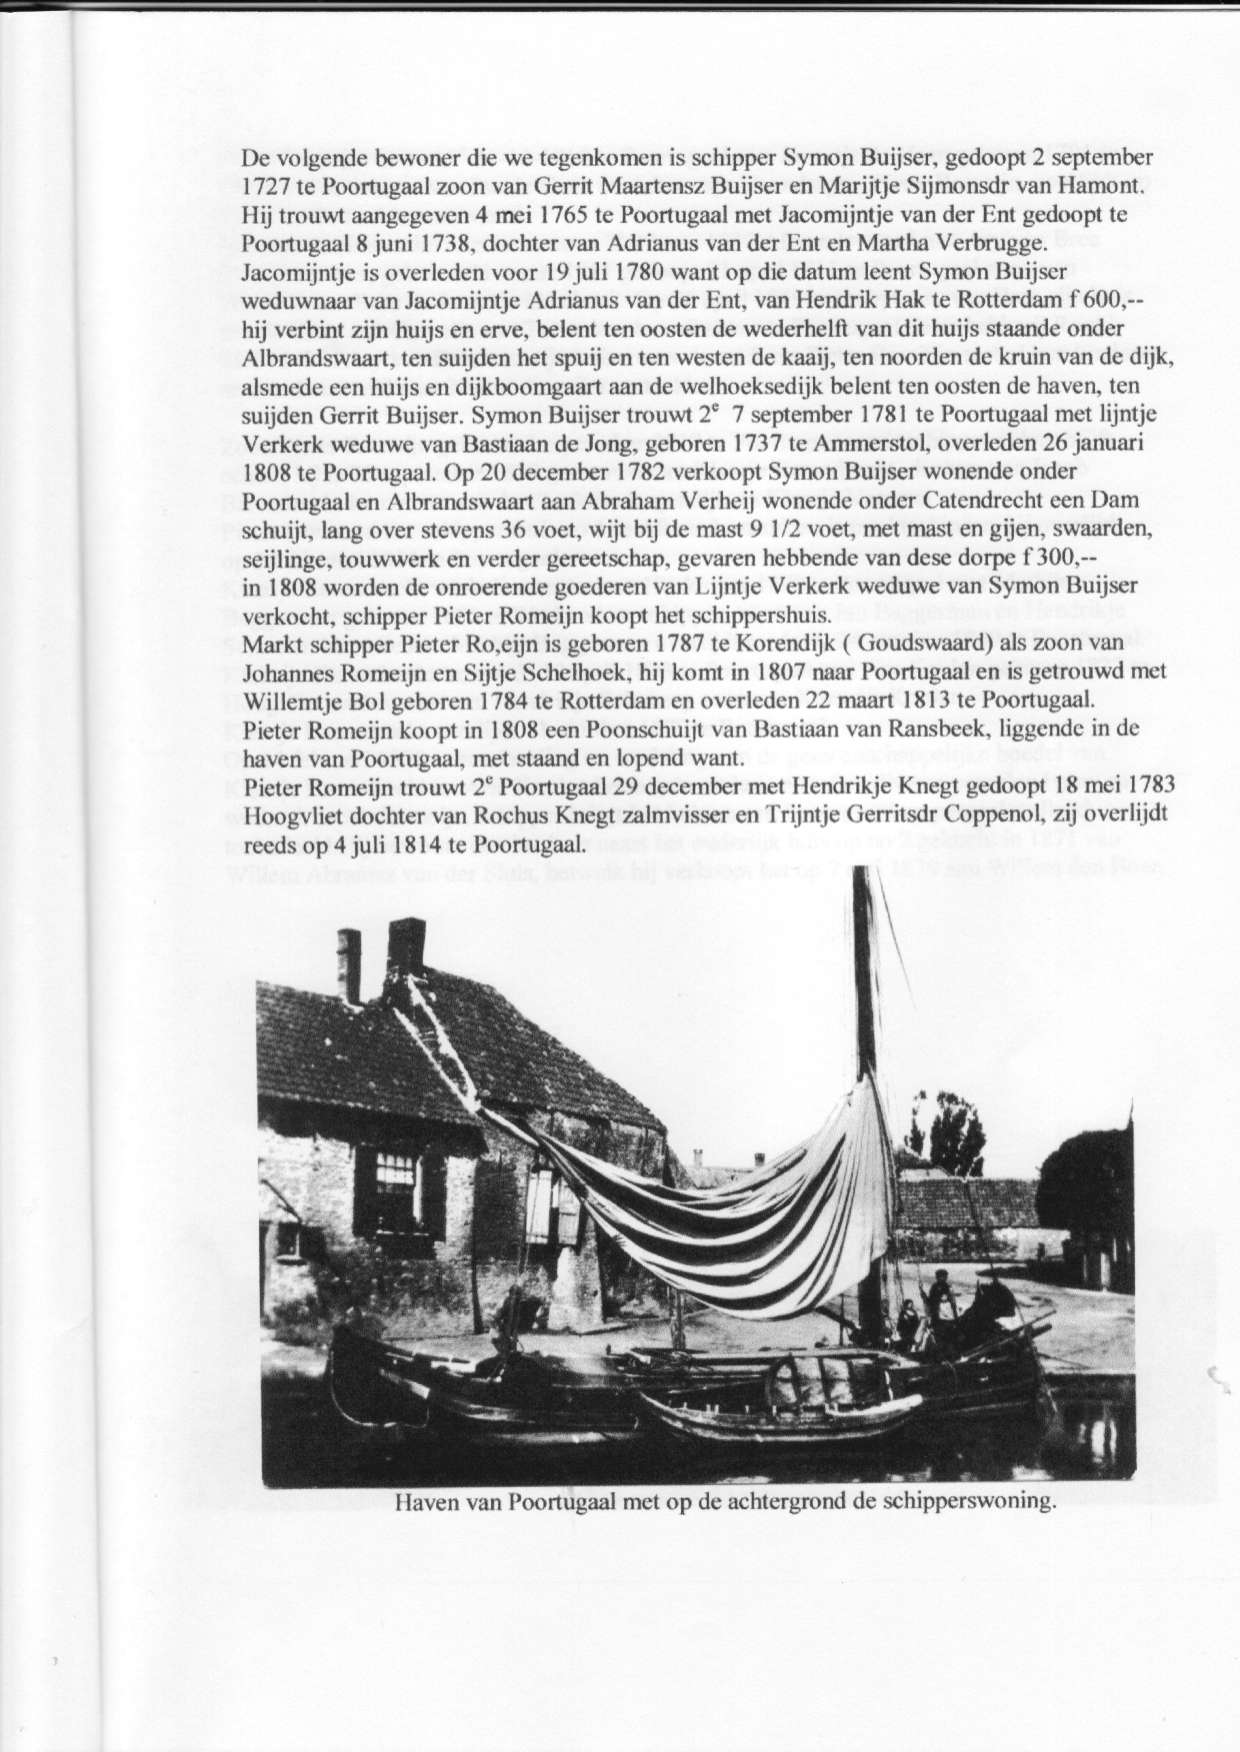 De volgende be$'oner die we tegcnkomcn is schippcr Symon Buijser. gedoopt 2 september 1727 te Poortugaal zoon van Gerrit Maartensz Buijser en Marijtjc Sijmonsdr van Hamonl.